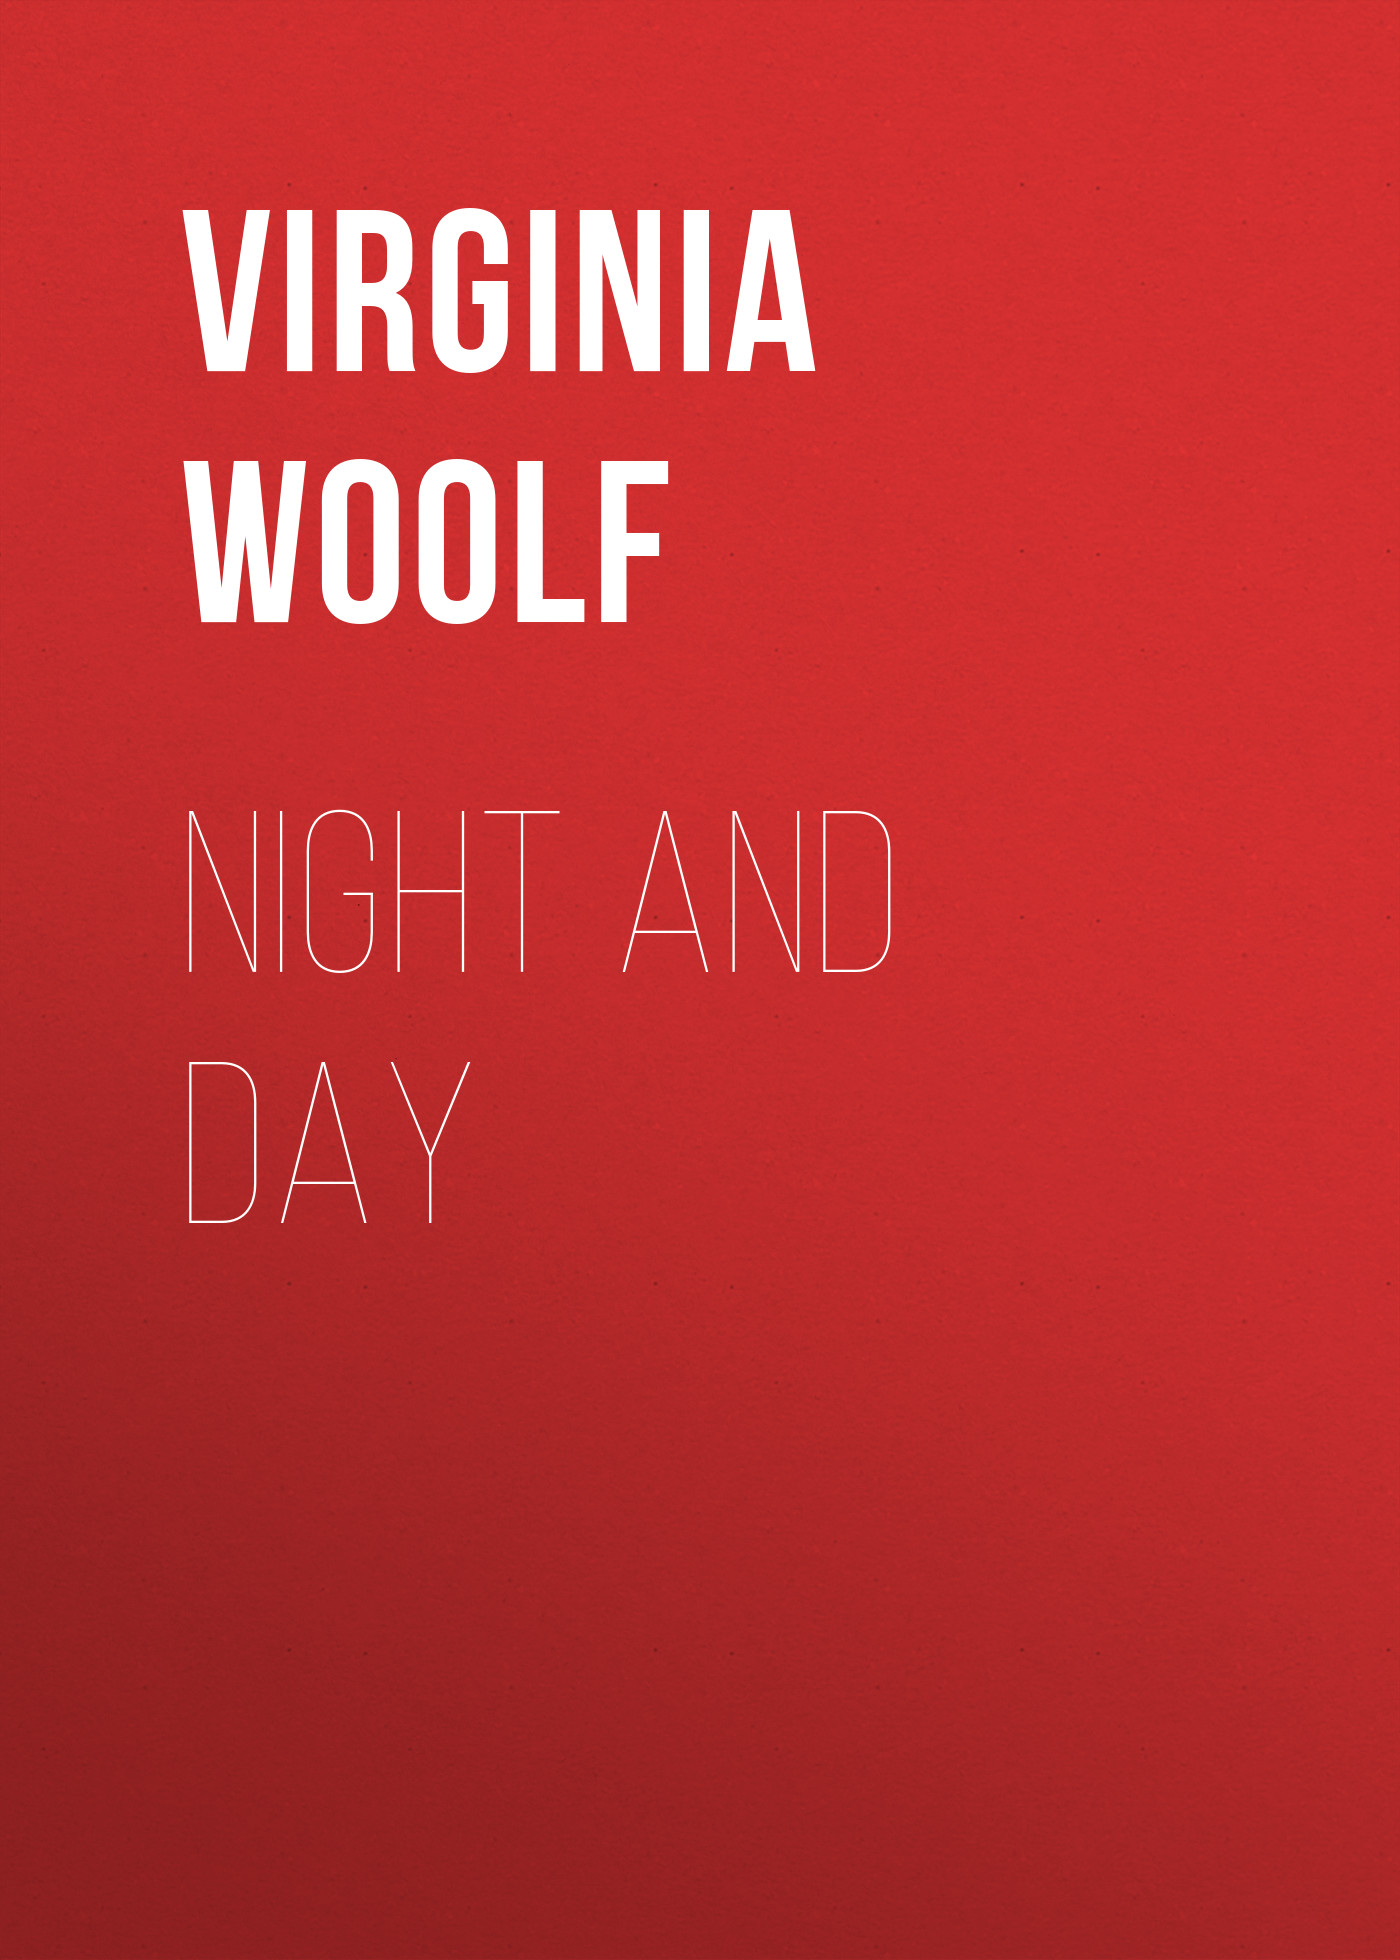 Книга Night and Day из серии , созданная Virginia Woolf, может относится к жанру Литература 20 века, Зарубежная классика, Зарубежные любовные романы. Стоимость электронной книги Night and Day с идентификатором 25560084 составляет 0 руб.